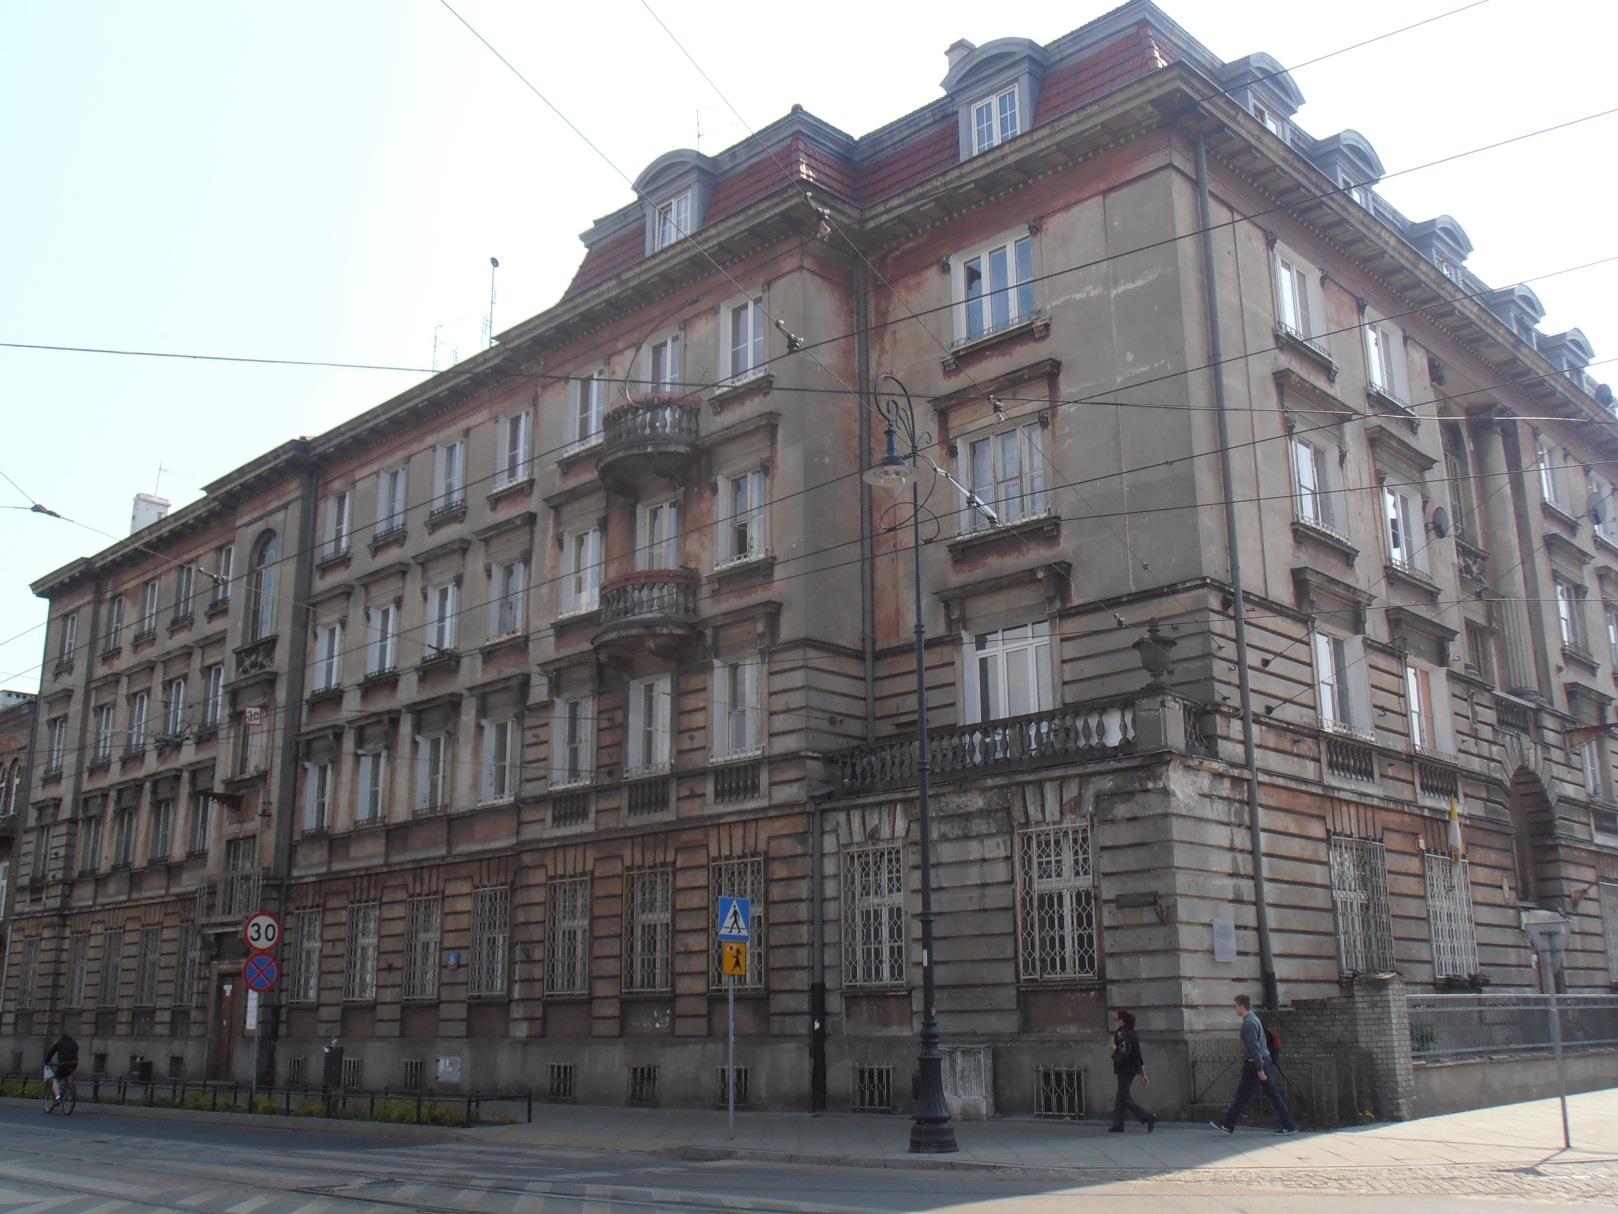 Budynek przy ulicy Kawęczyńskiej 16 został zbudowany w dwudziestoleciu międzywojennym dla pracowników warszawskich